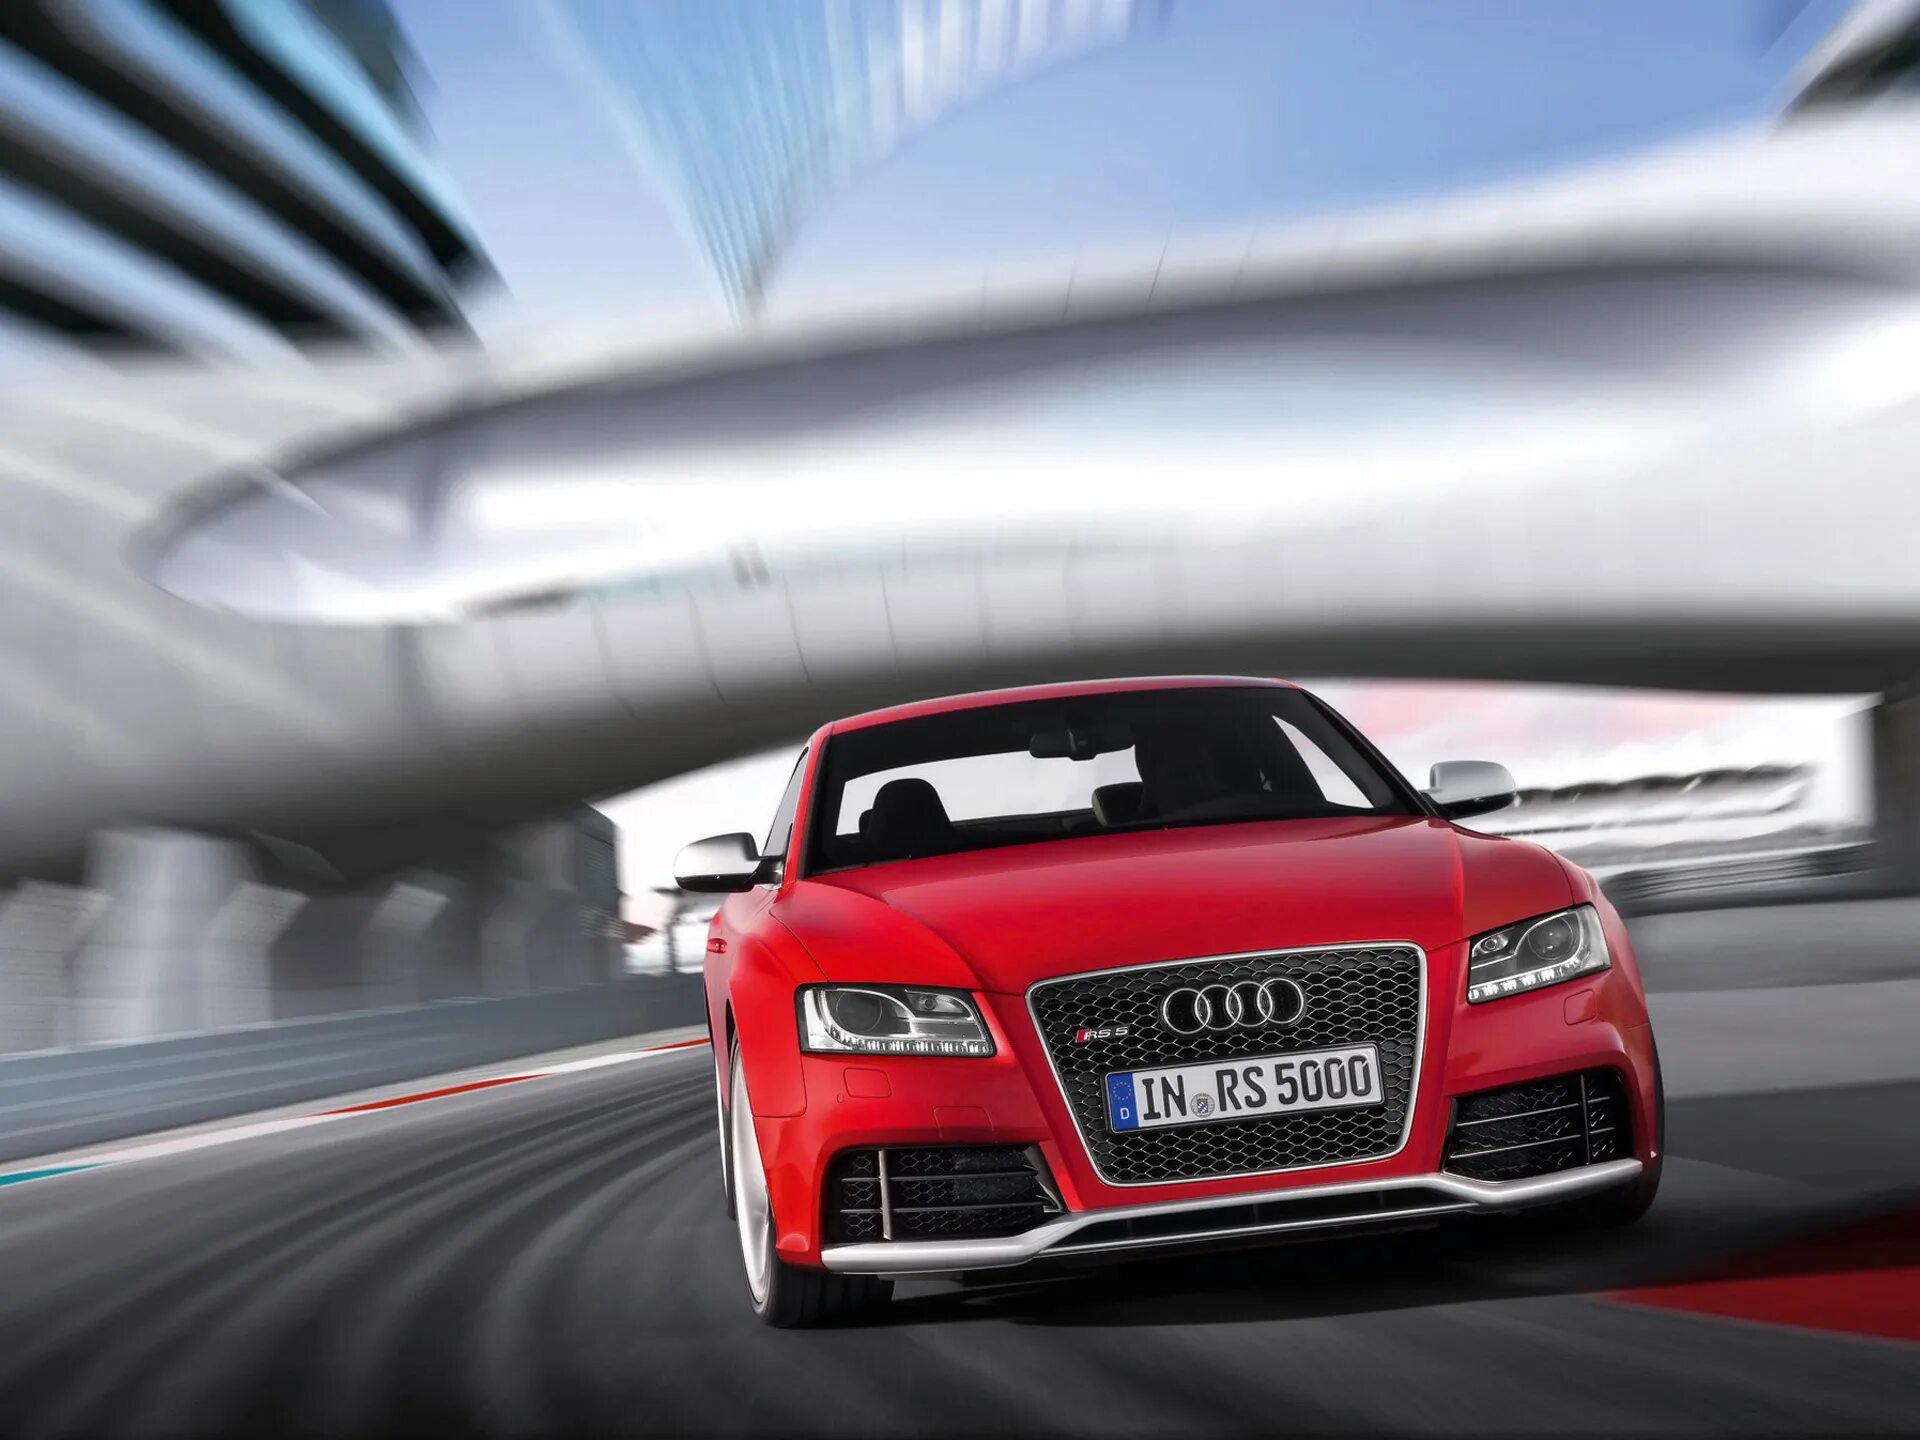 Audi rs5 2010. Audi rs5 2011. "Audi" "RS 5" "2011" NK. "Audi" "RS 5" "2011" LR.